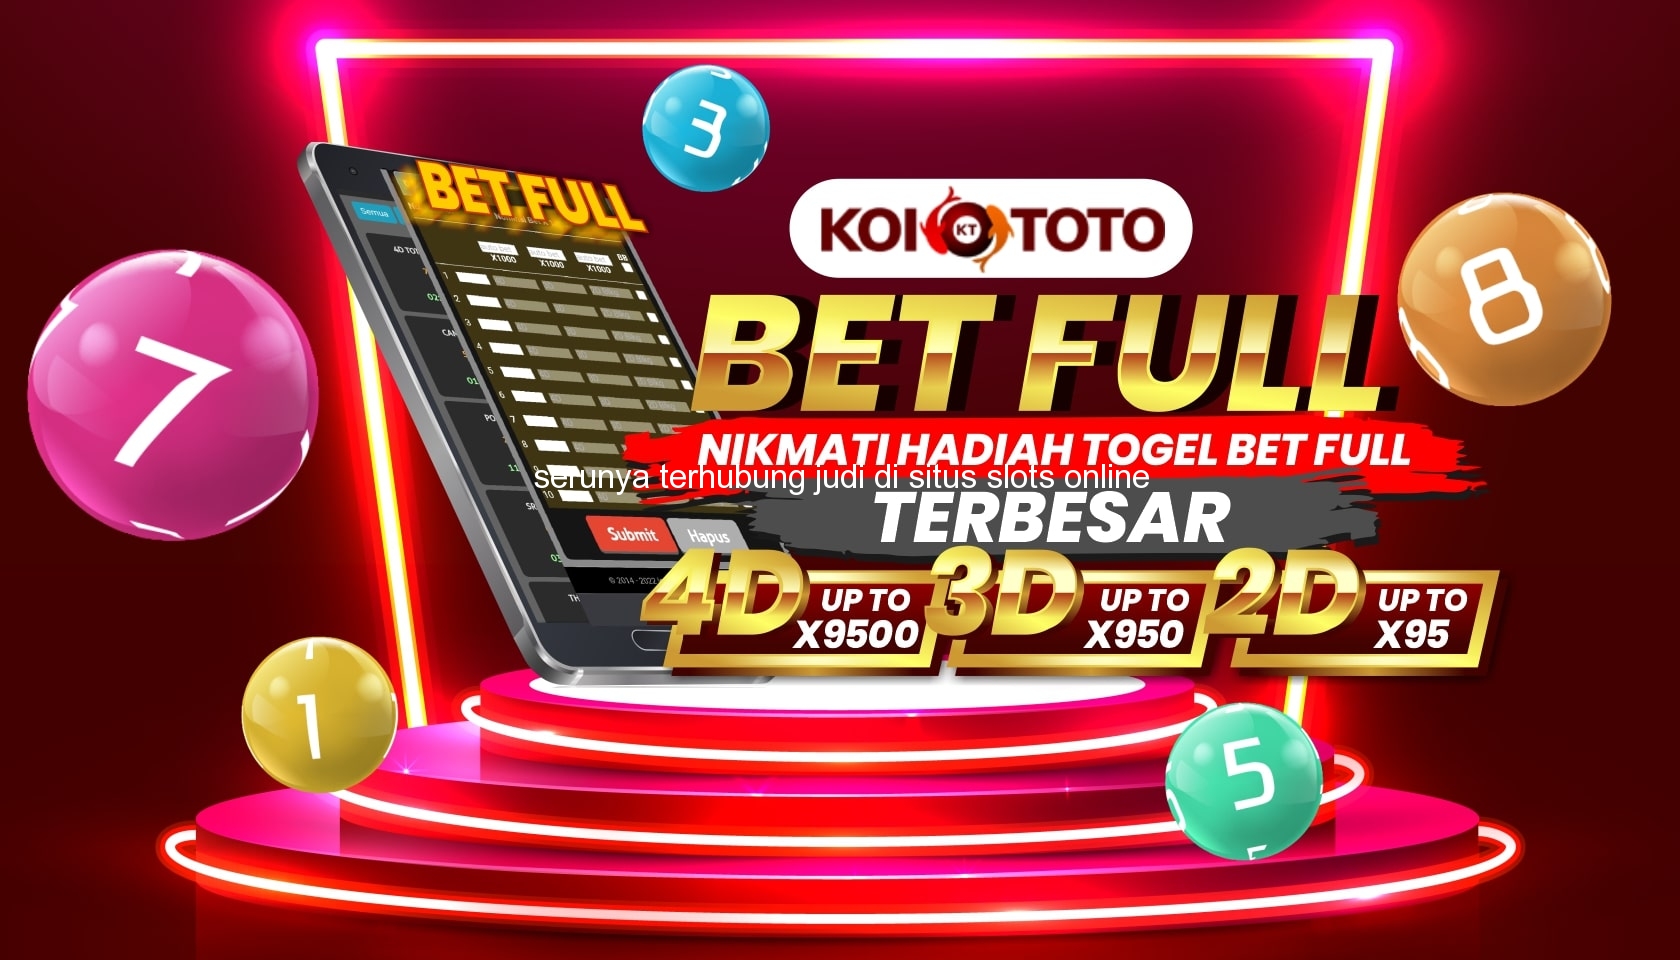 Serunya Terhubung Judi di Situs Slots Online Terbaik di Tontonunu – KOITOTO